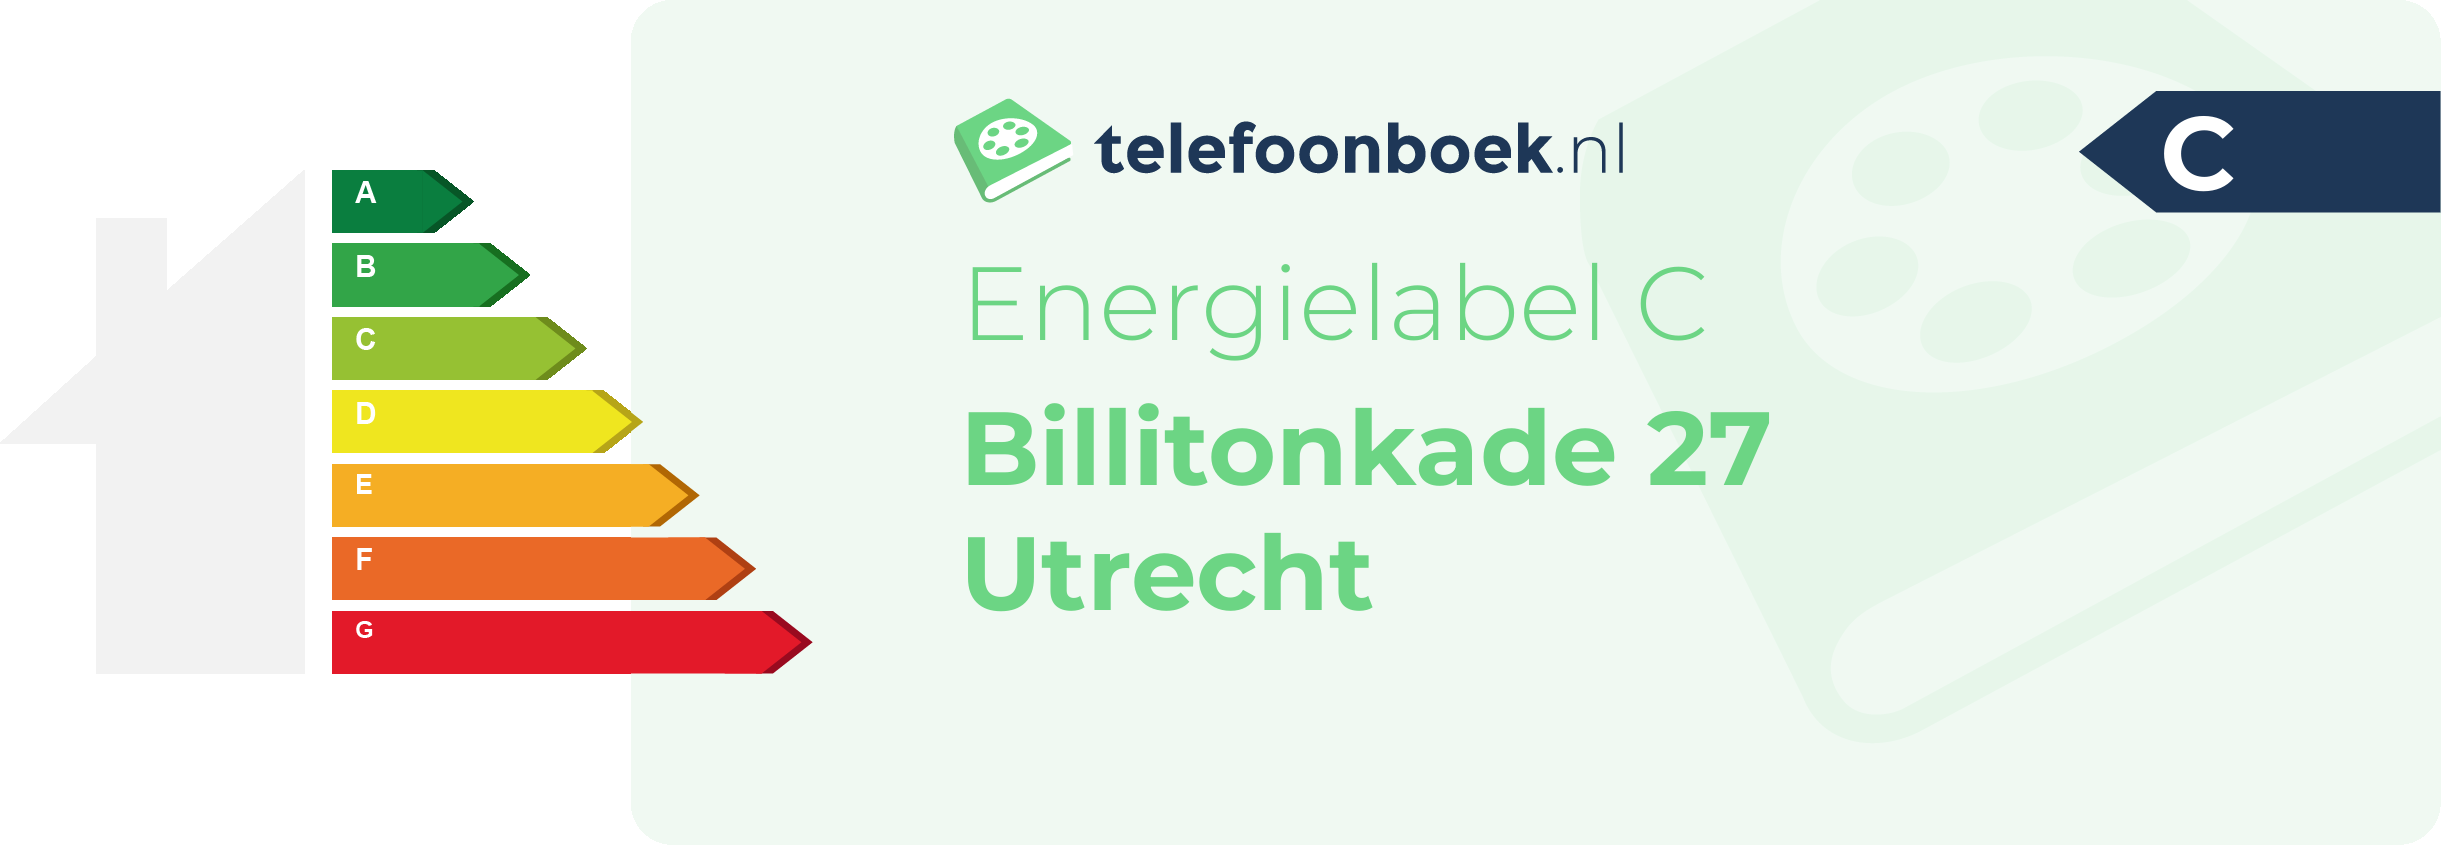 Energielabel Billitonkade 27 Utrecht